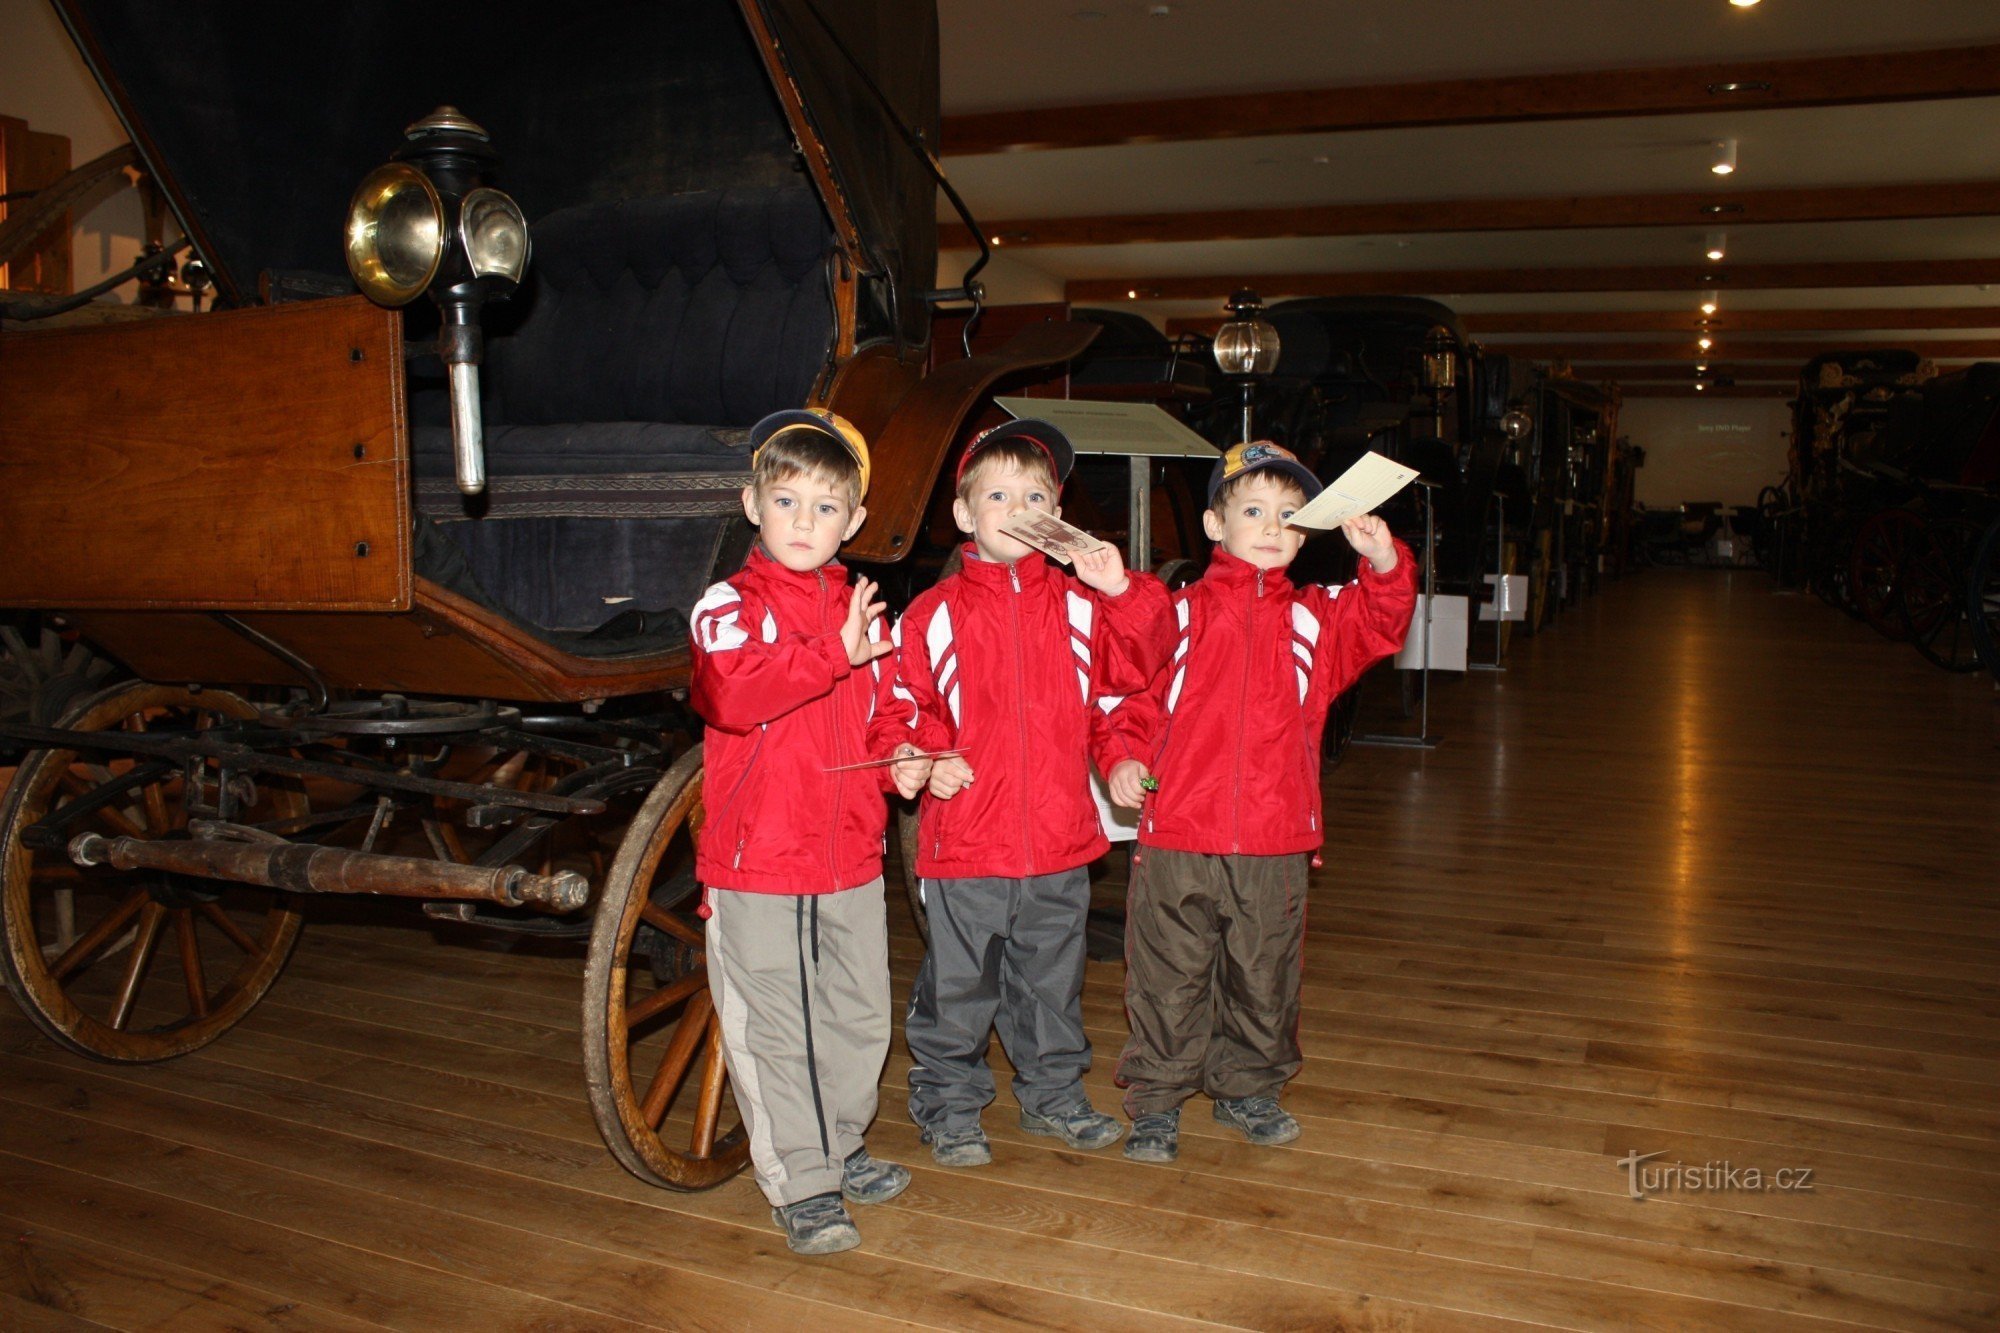 Trojčki, dečki Pája, Ráďa in Míša v muzeju kočij